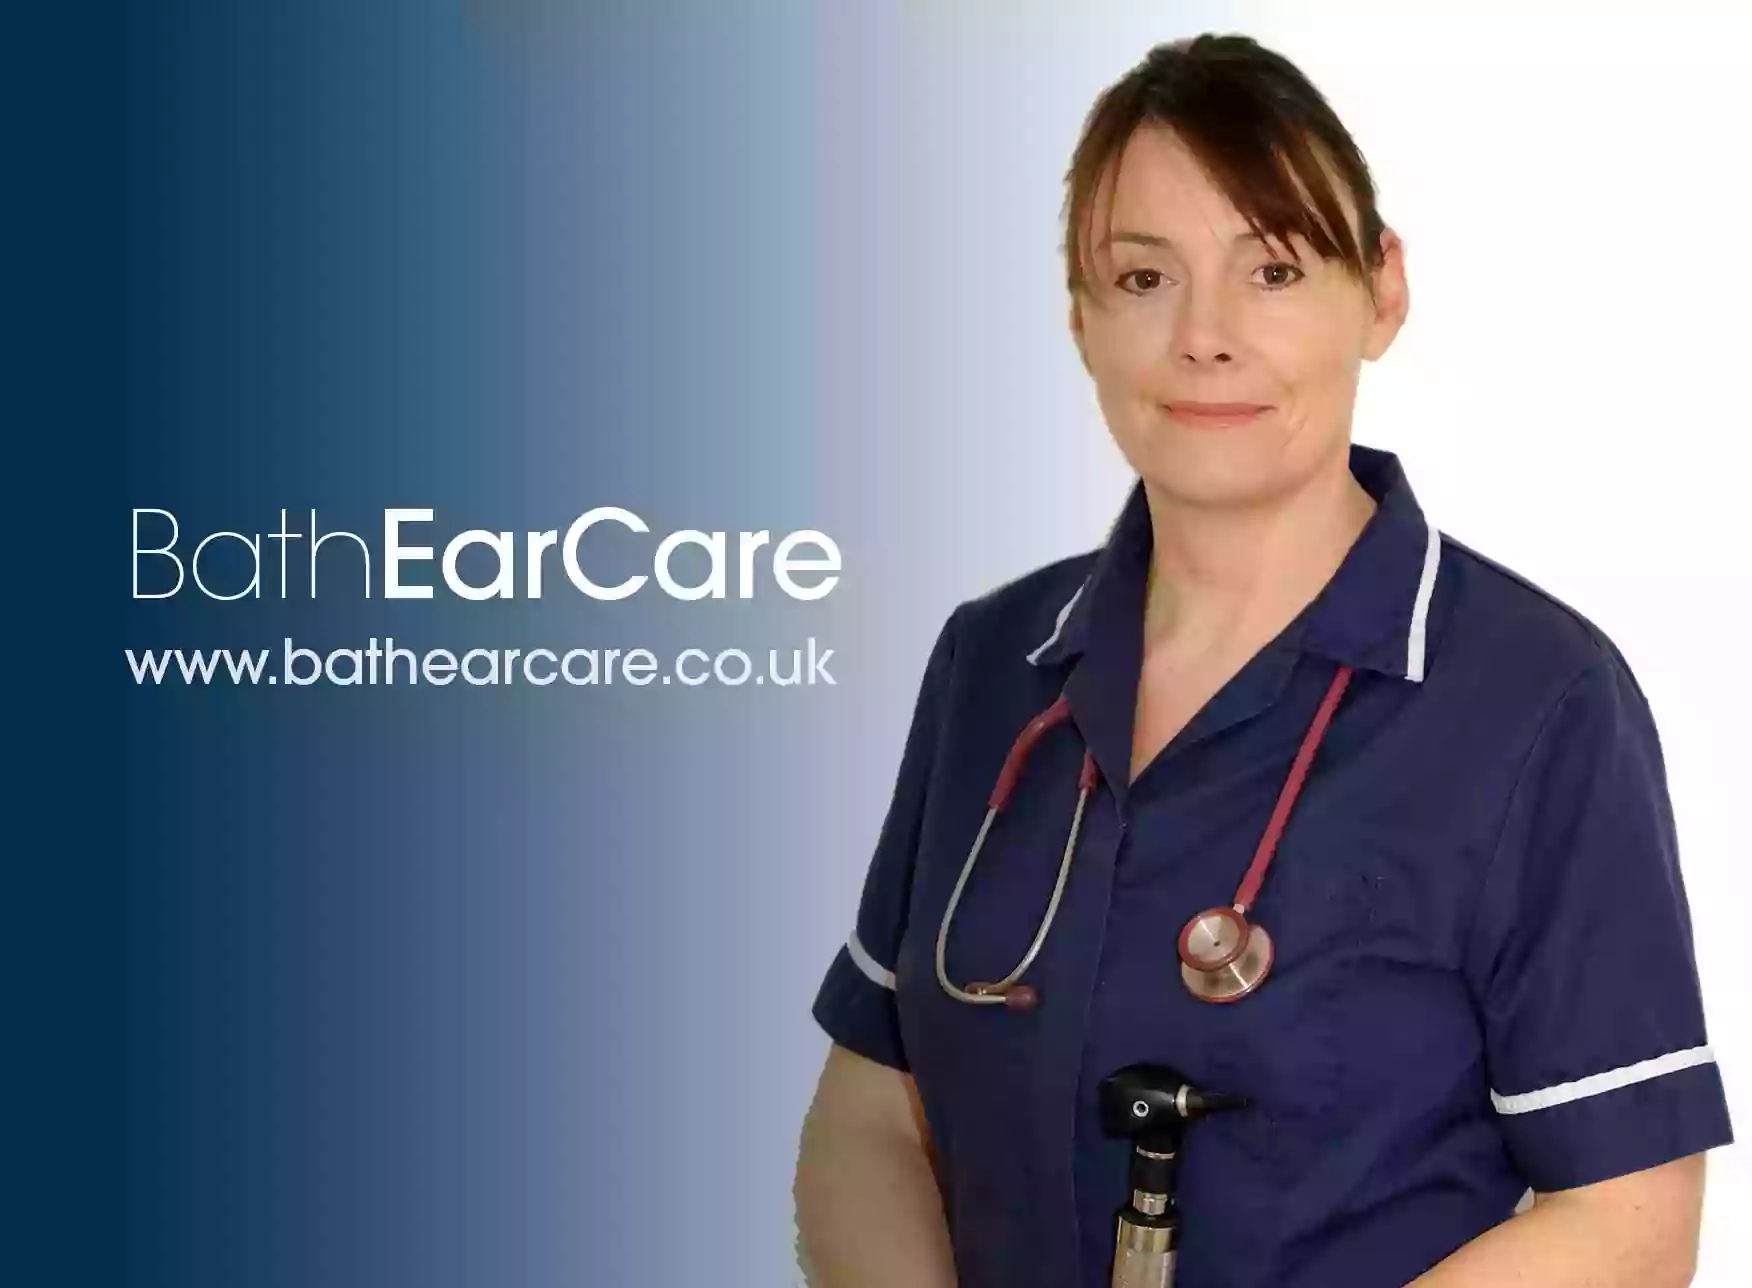 Bath Ear Care Clinic